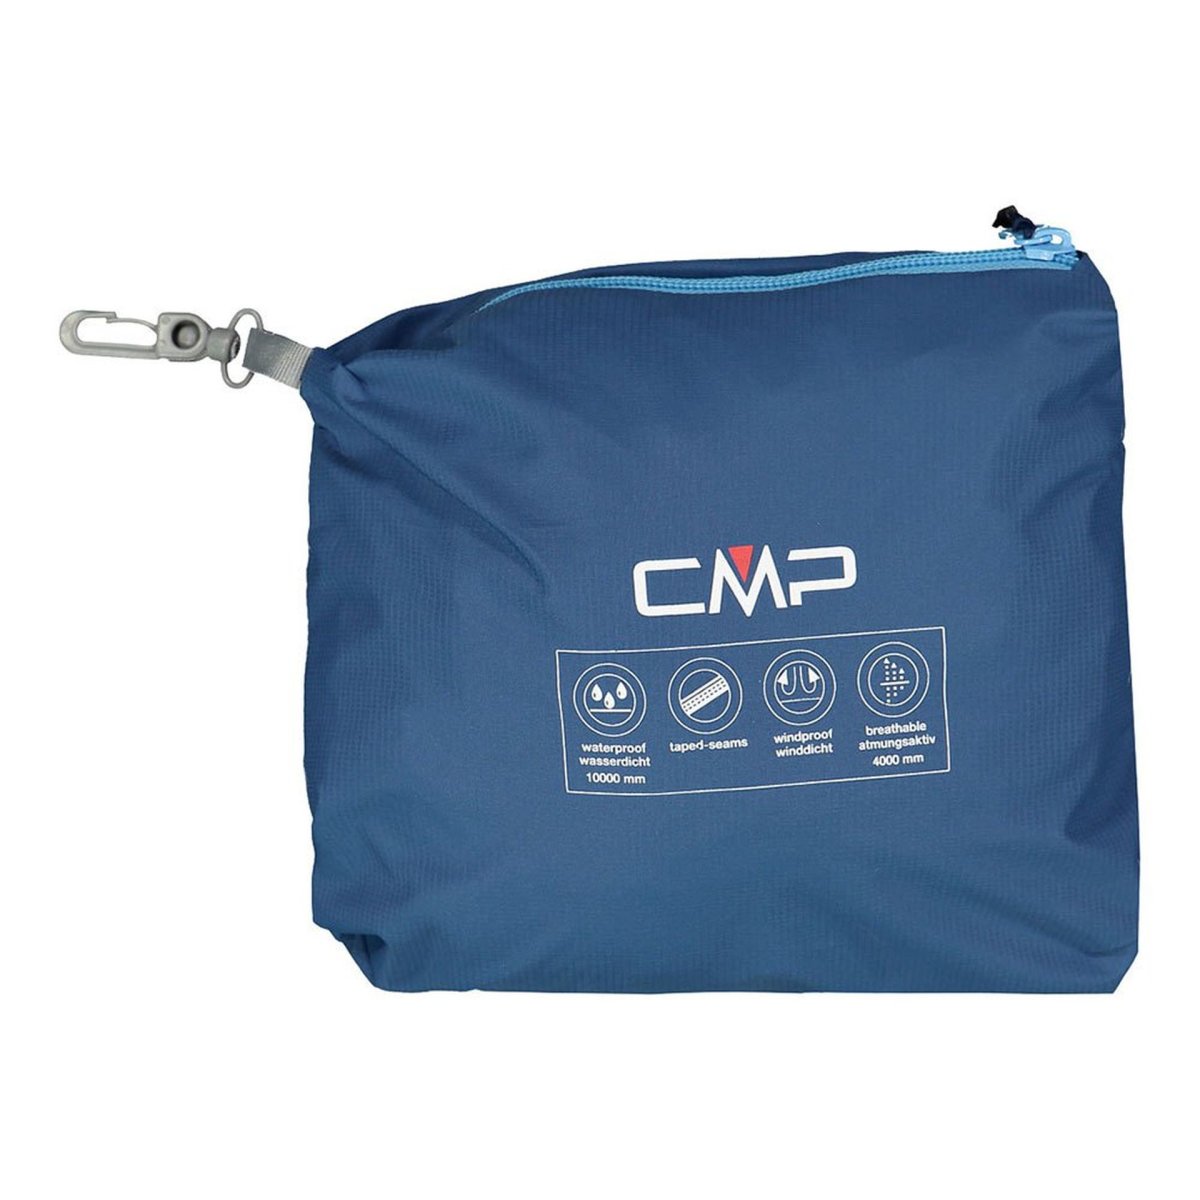 CMP Damen Regenjacke Zip Hood Jacket 32X5826 dusty blue, 79,95 € | Regenjacken